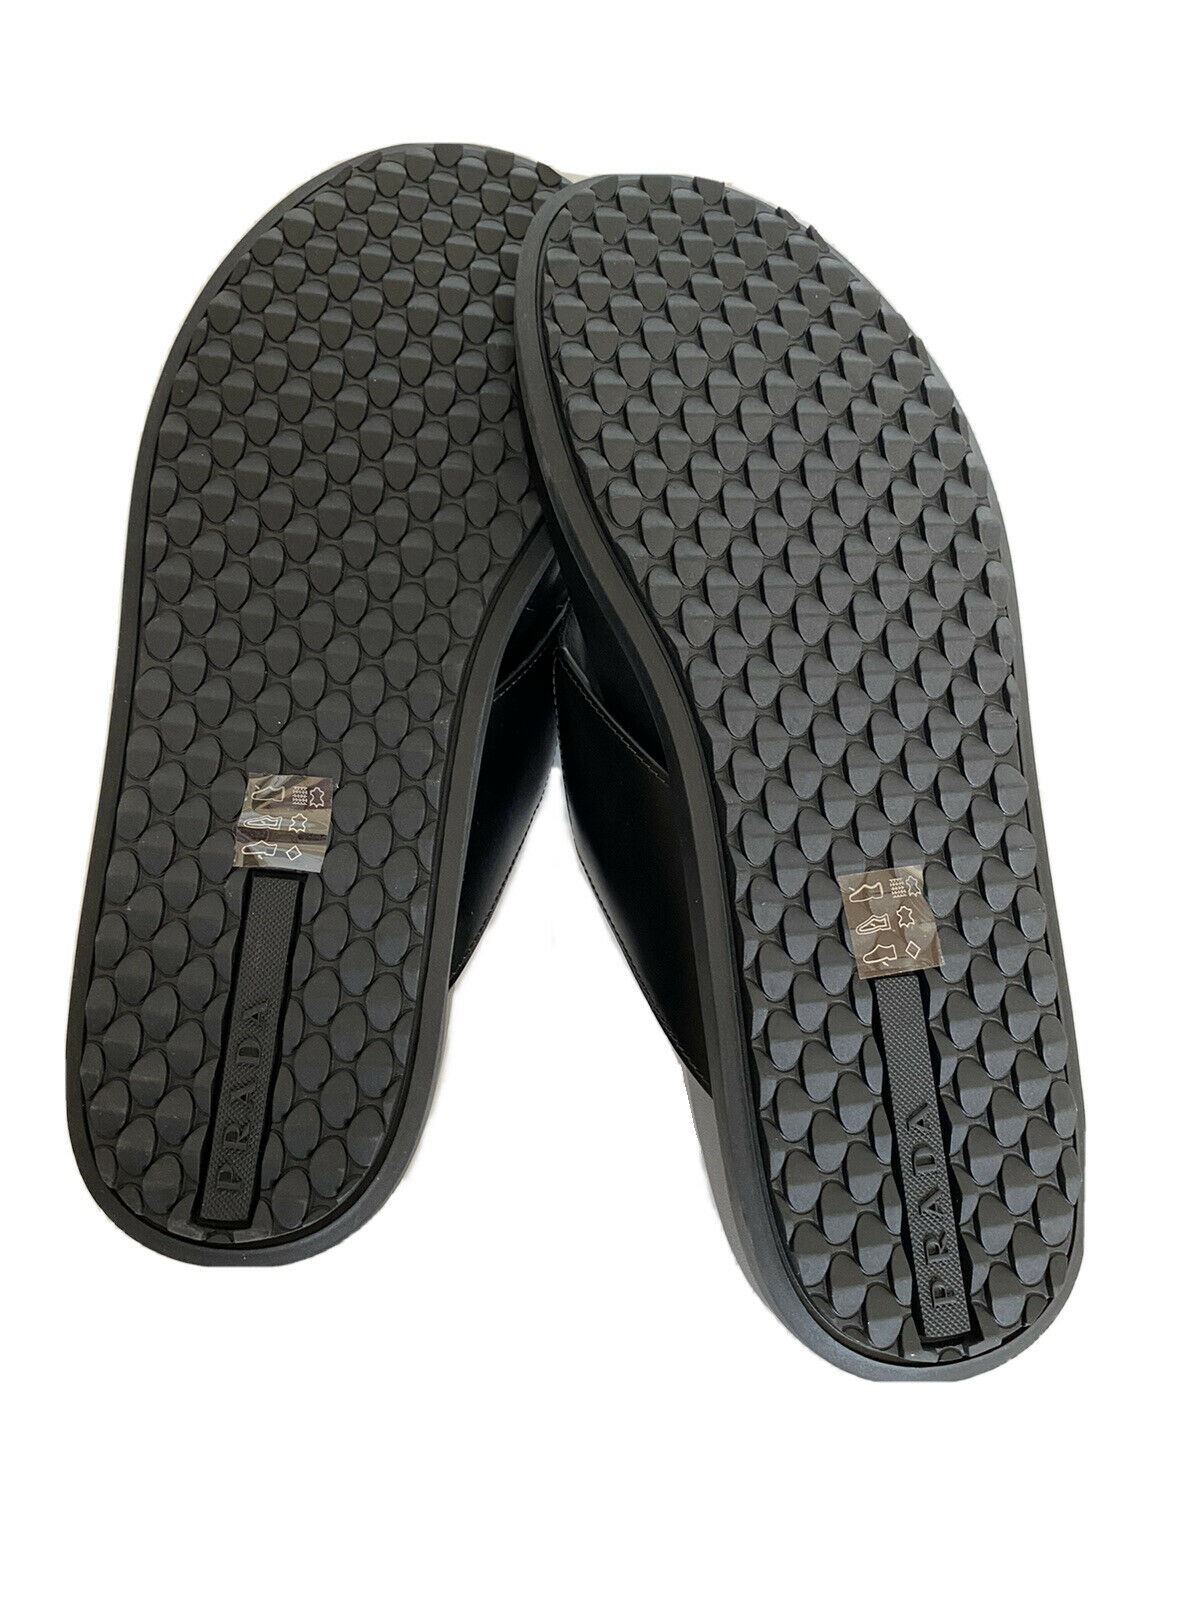 NIB $520 Prada Milano Мужские сандалии-шлепанцы Обувь Черный 7 США 2Y3030 Италия 